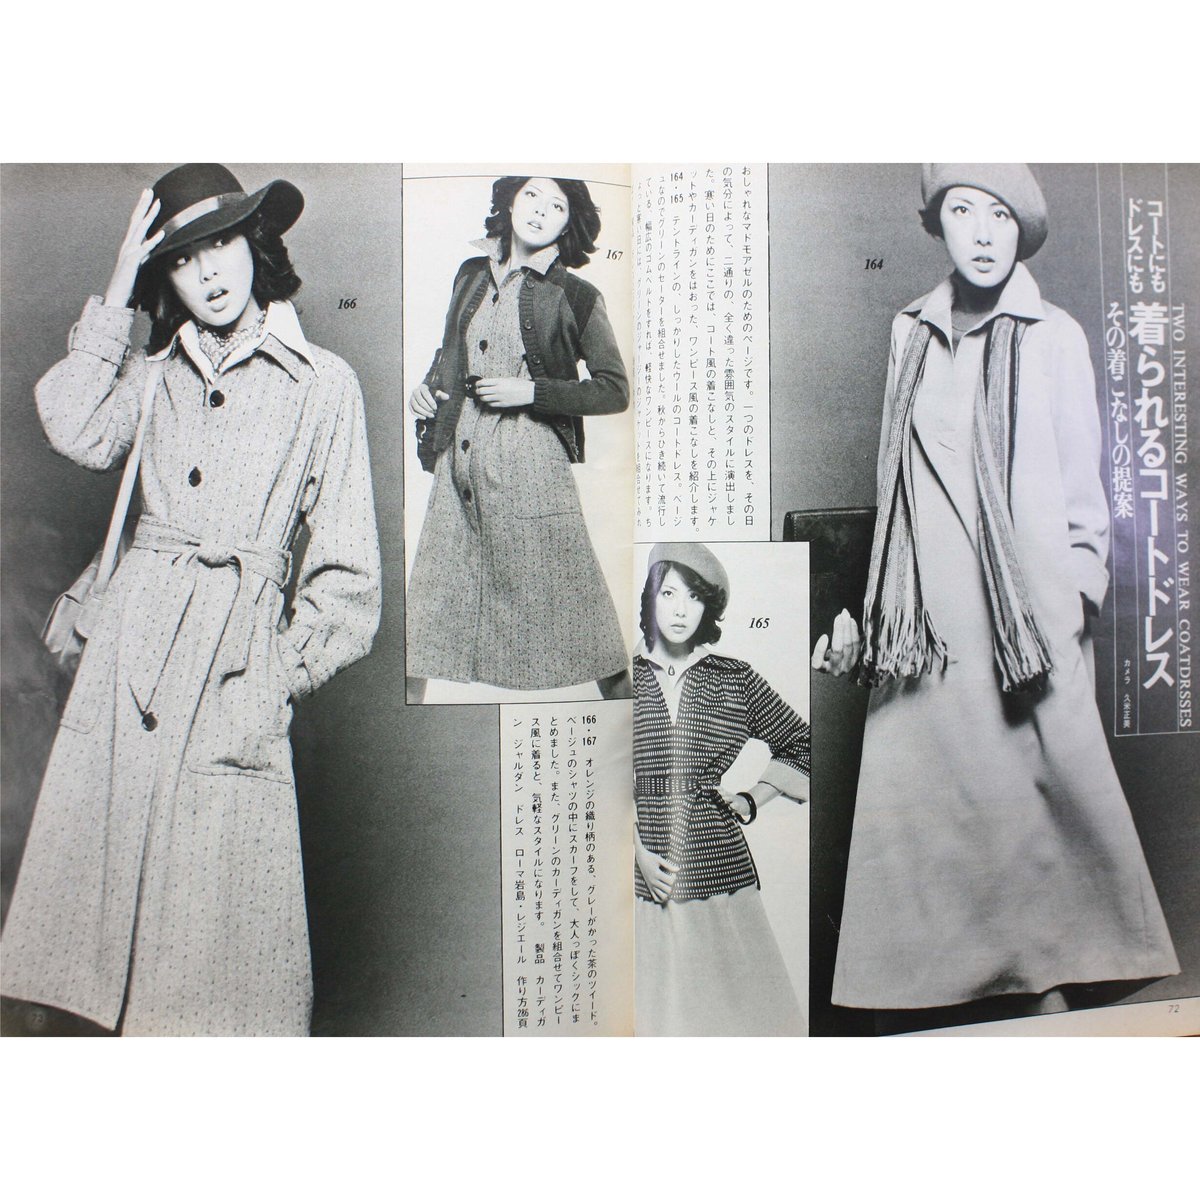 鎌倉書房 ドレスメーキング 1987-1991年 39冊 女性ファッション雑誌 